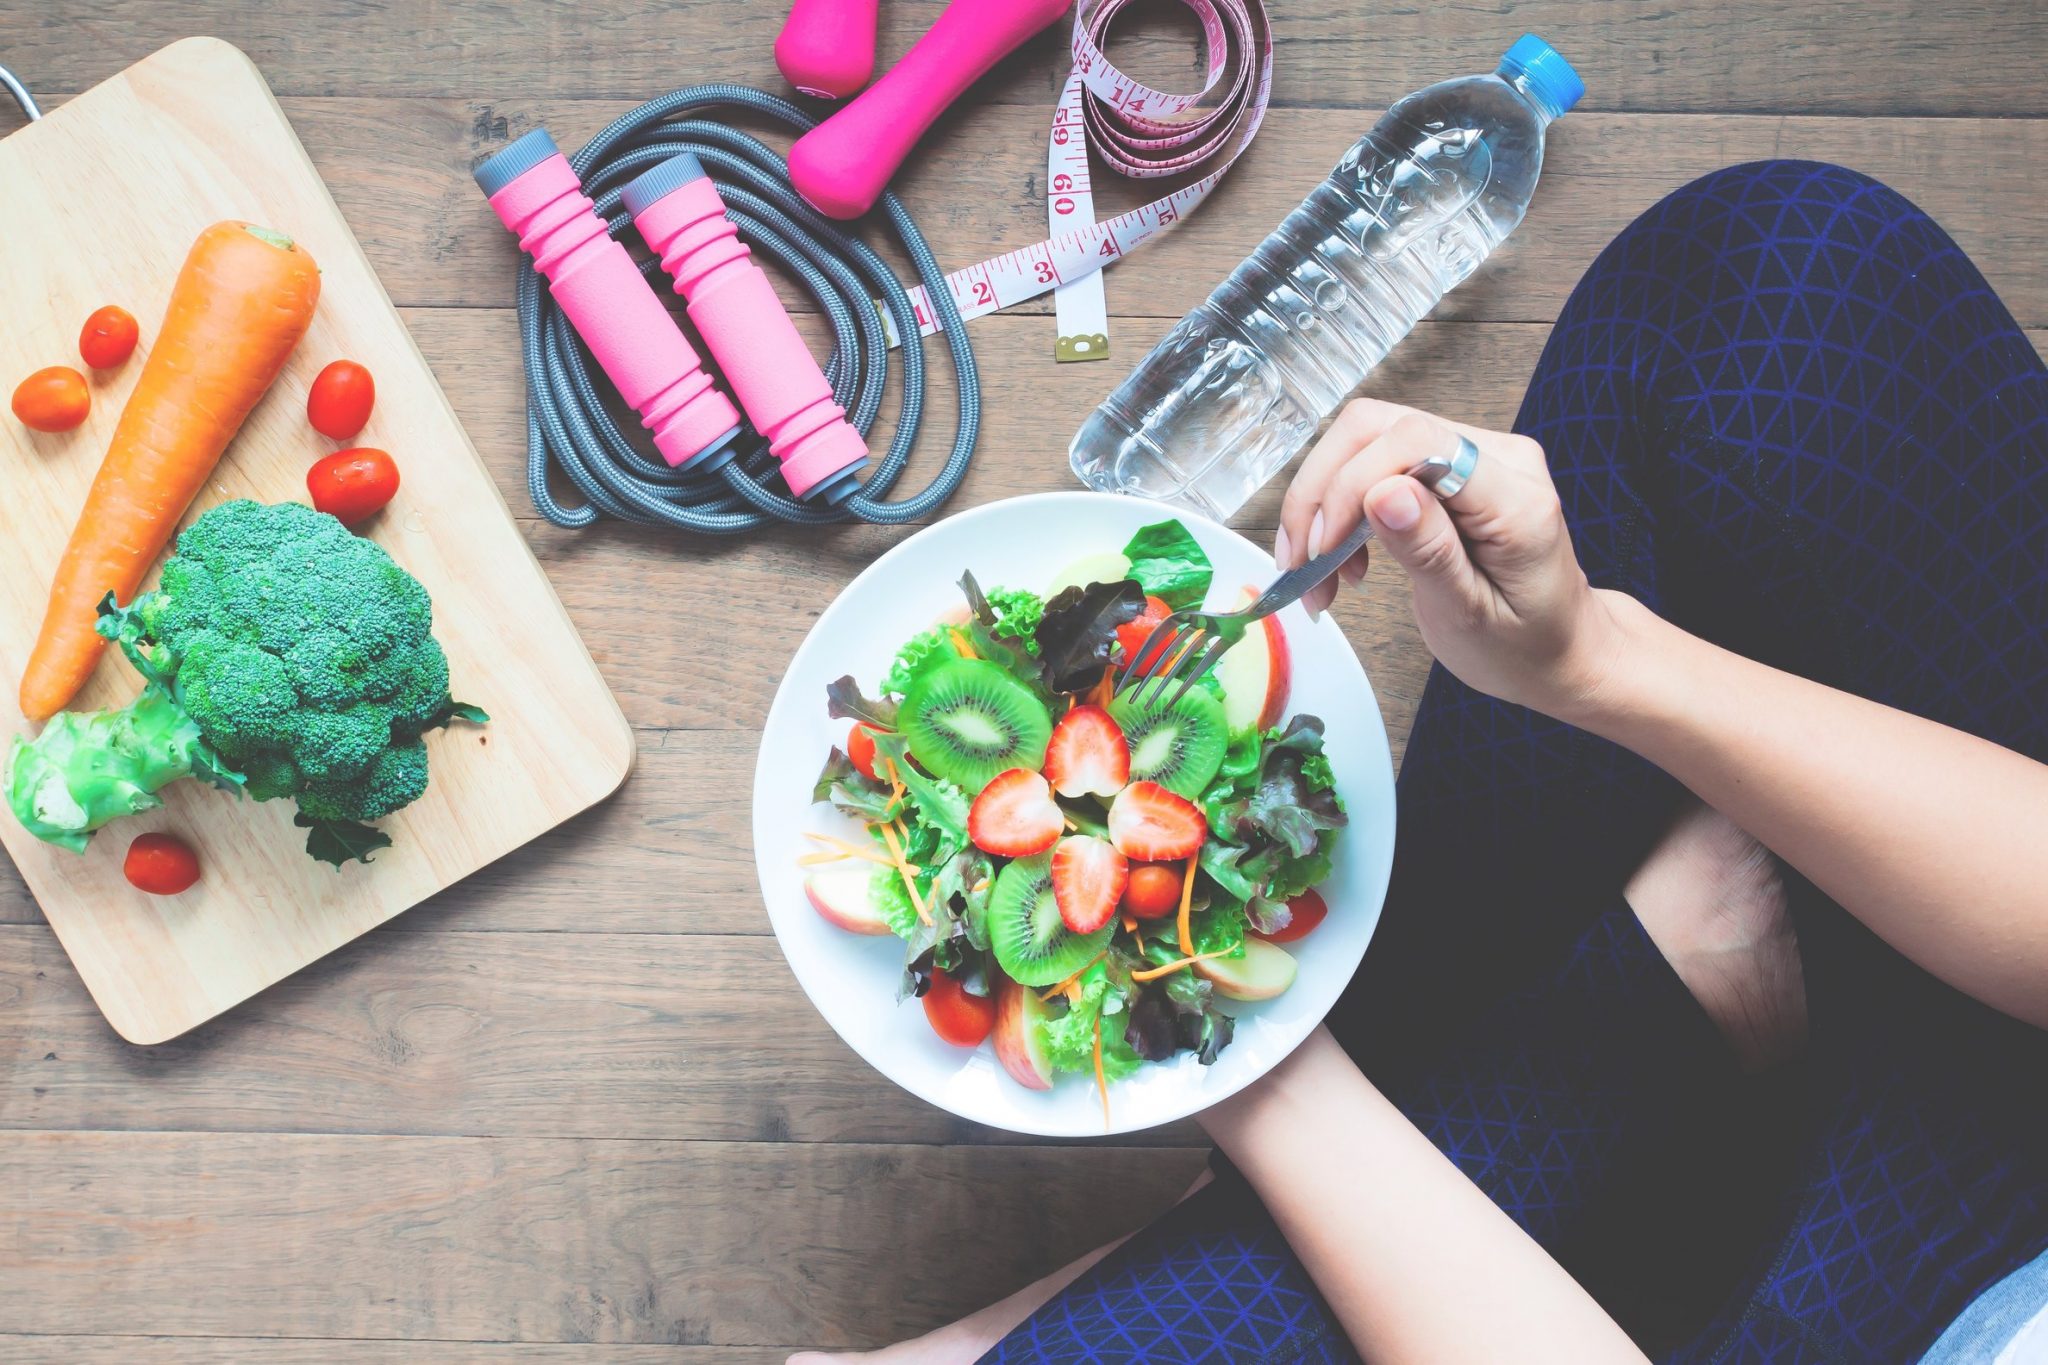 Eat clean, chế độ ăn thần thánh giảm cân trong 1 tuần siêu nhanh và an toàn